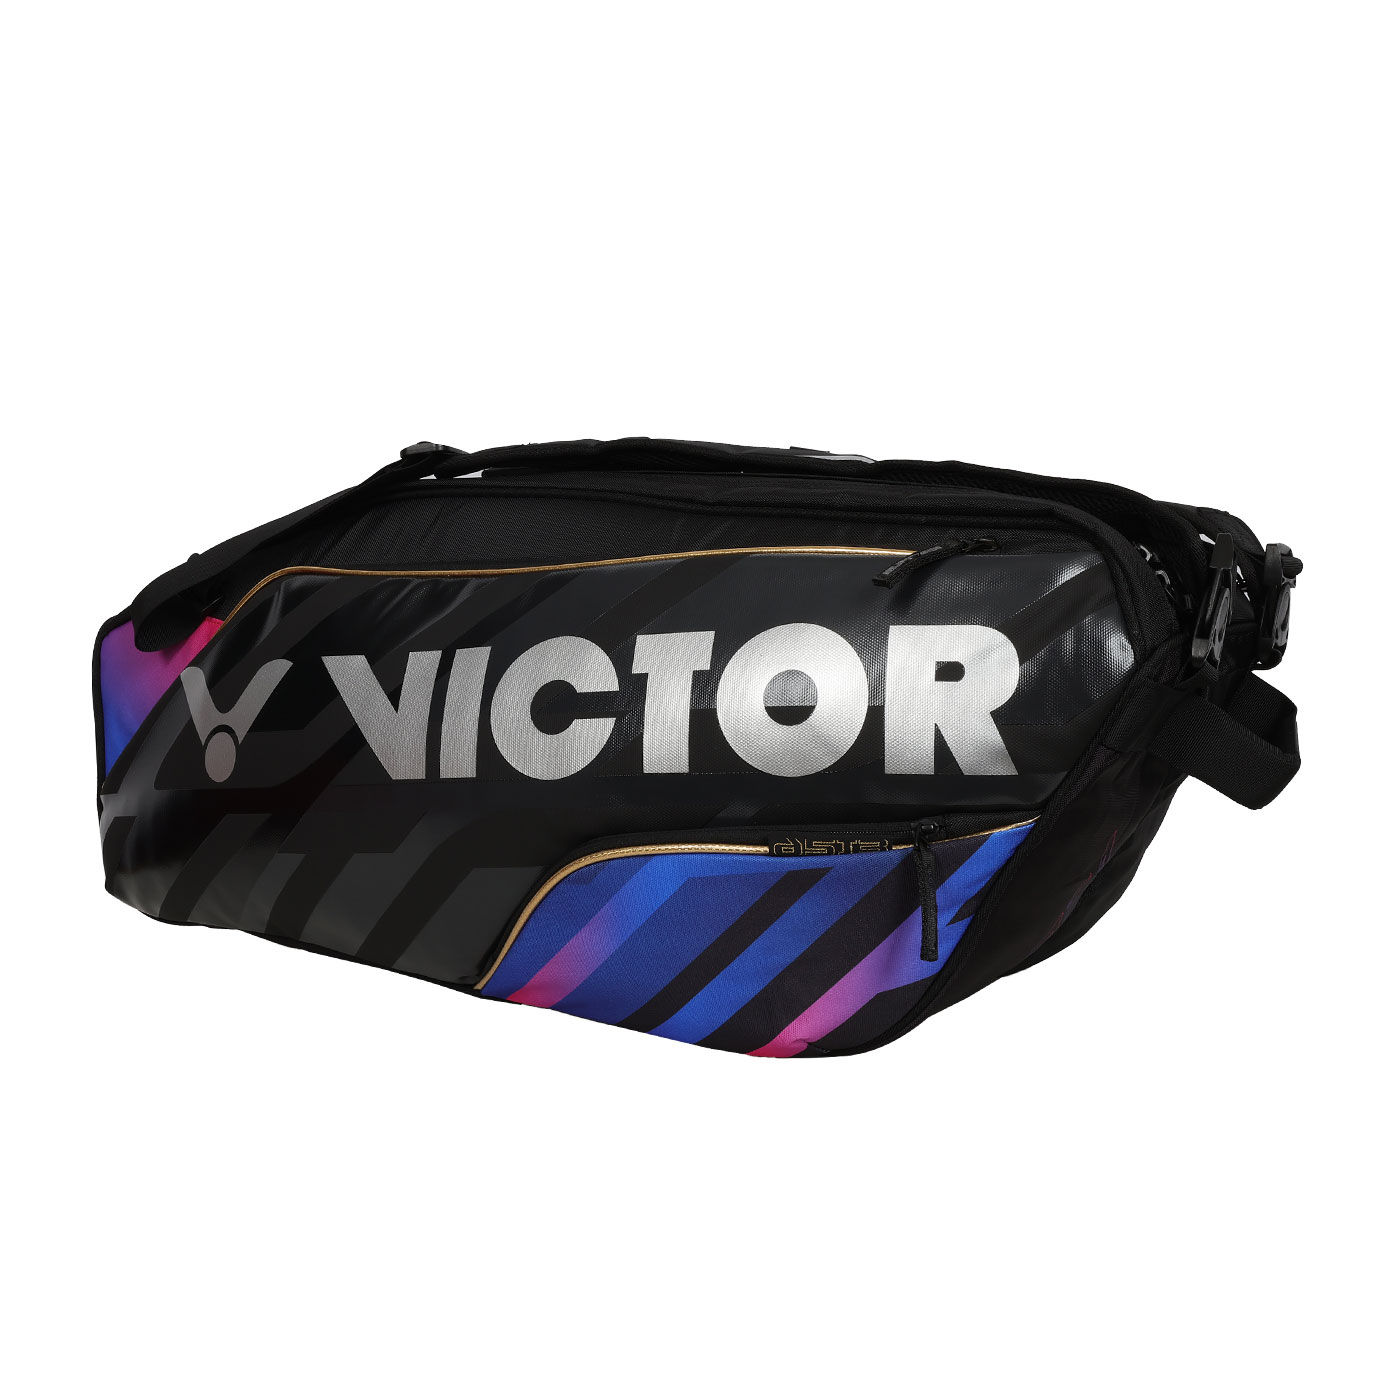 VICTOR 6支裝羽拍包  BR9213CJ - 黑銀藍紫粉